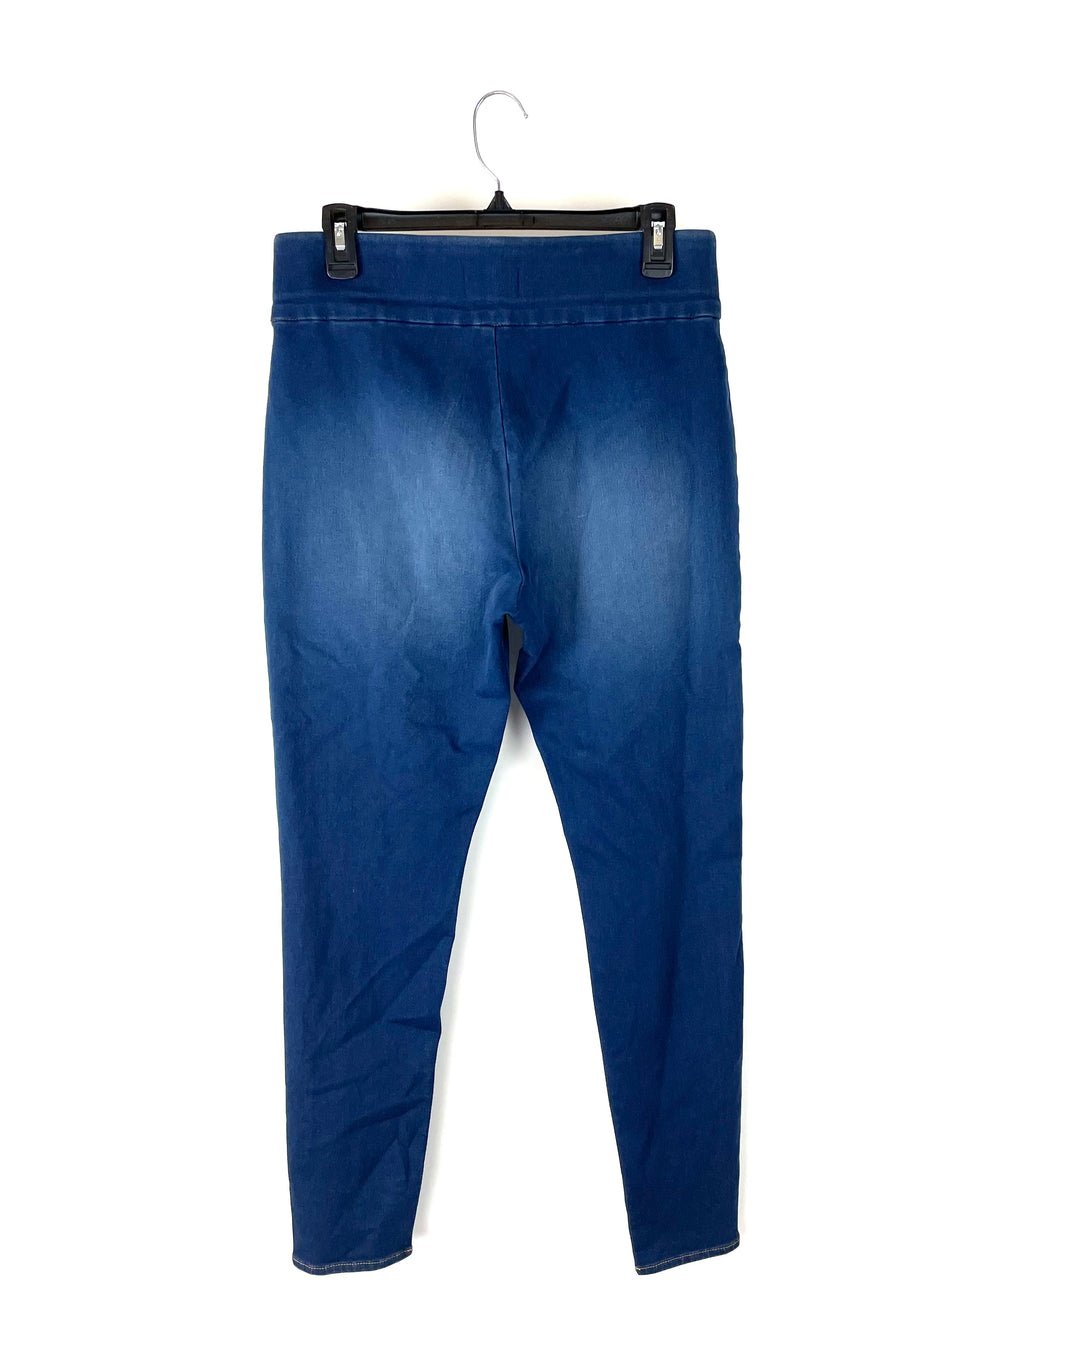 Dark Wash Jeans - 8P, 8T